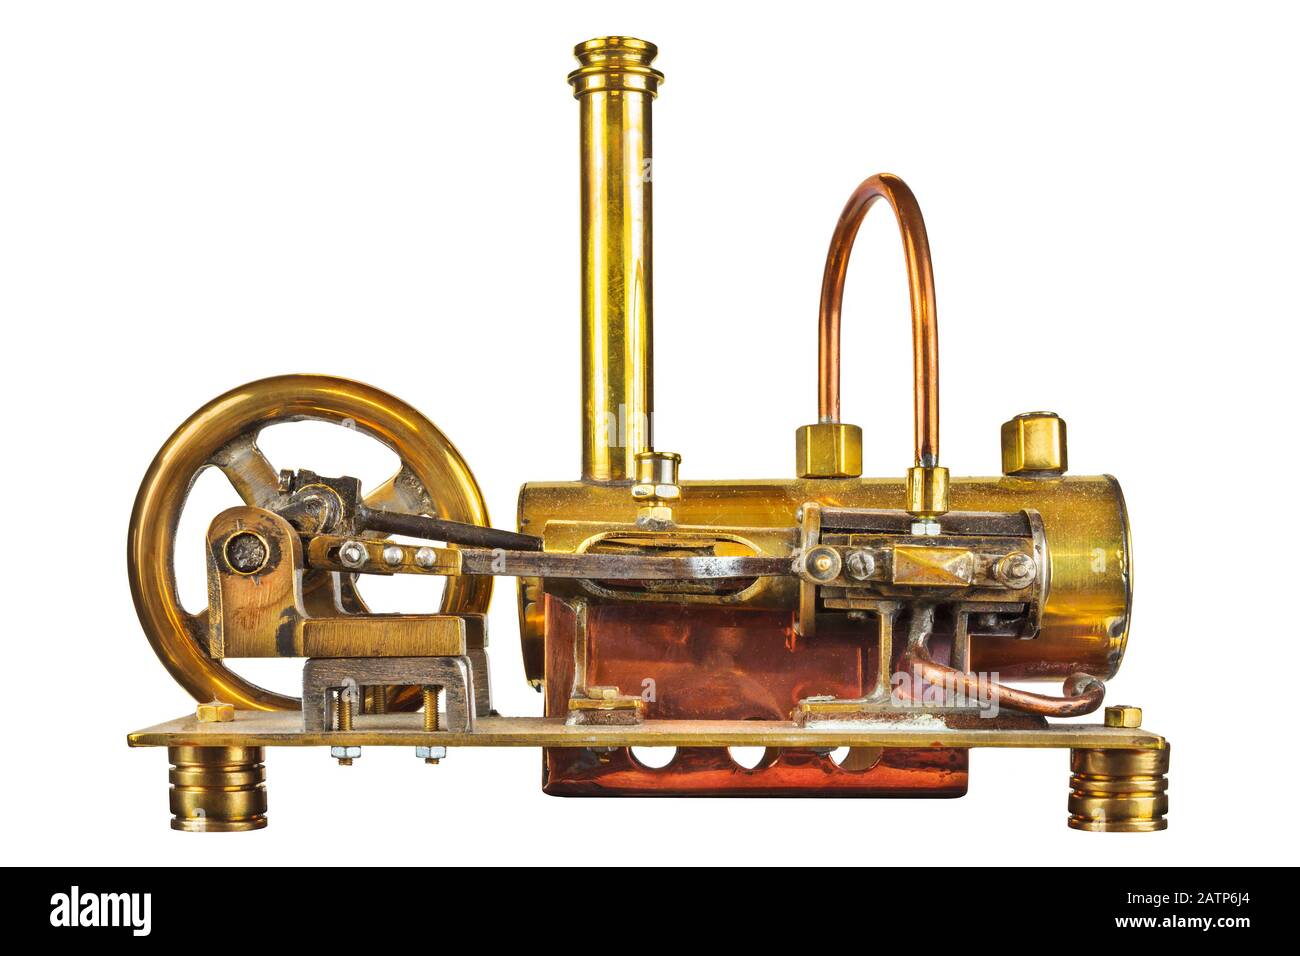 Maquina de vapor revolucion industrial fotografías e imágenes de alta  resolución - Página 2 - Alamy